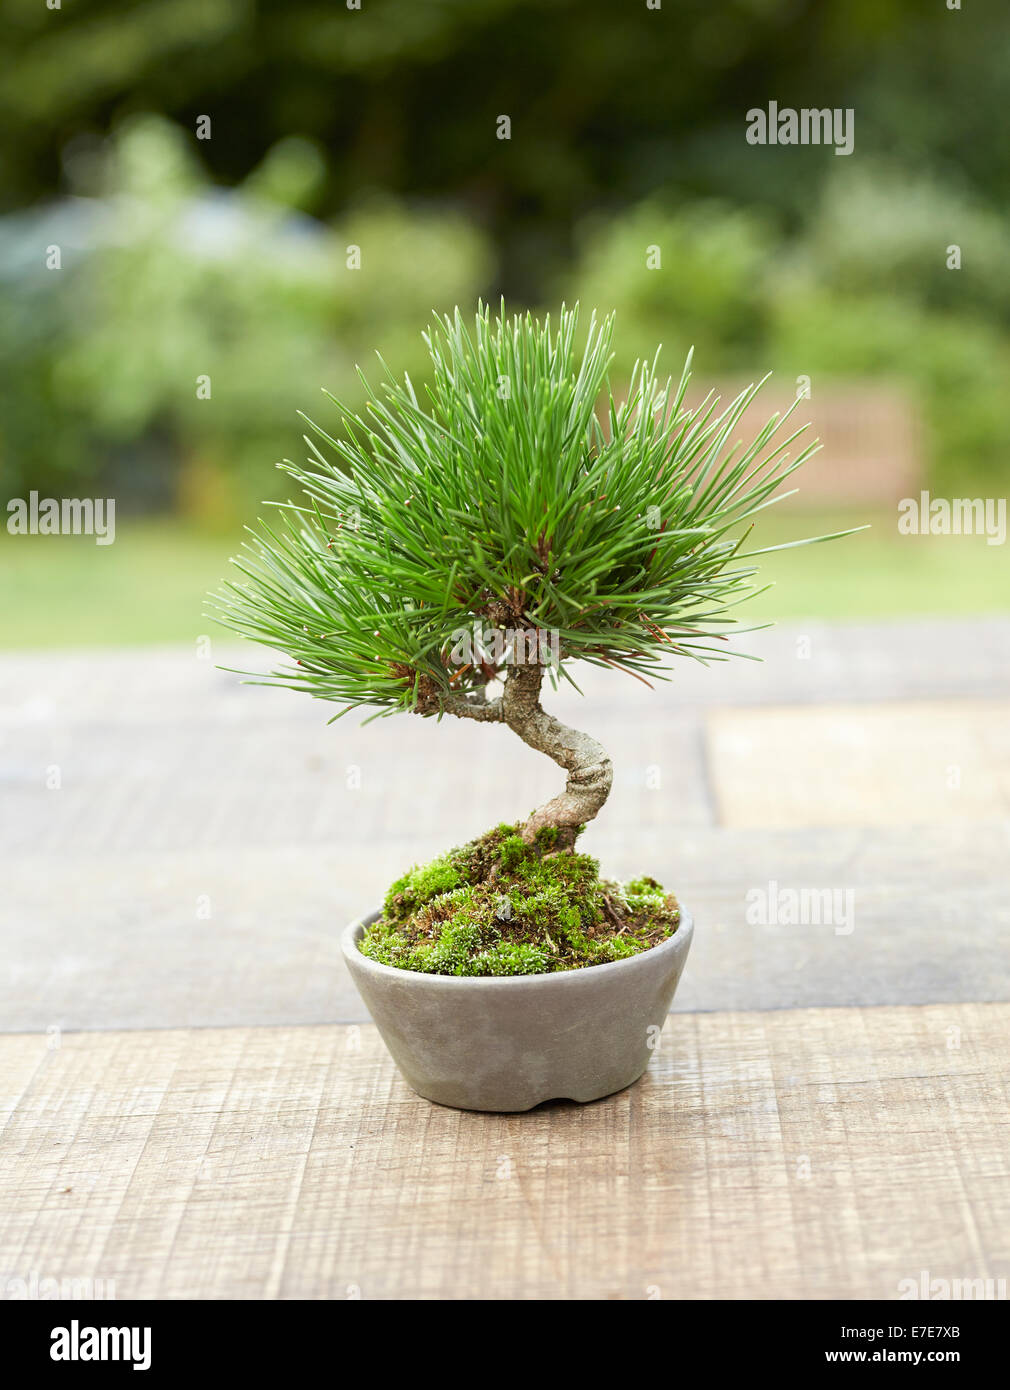 Bonsai Pinus thunbergii, Japanese Black Pine, tree Stock Photo